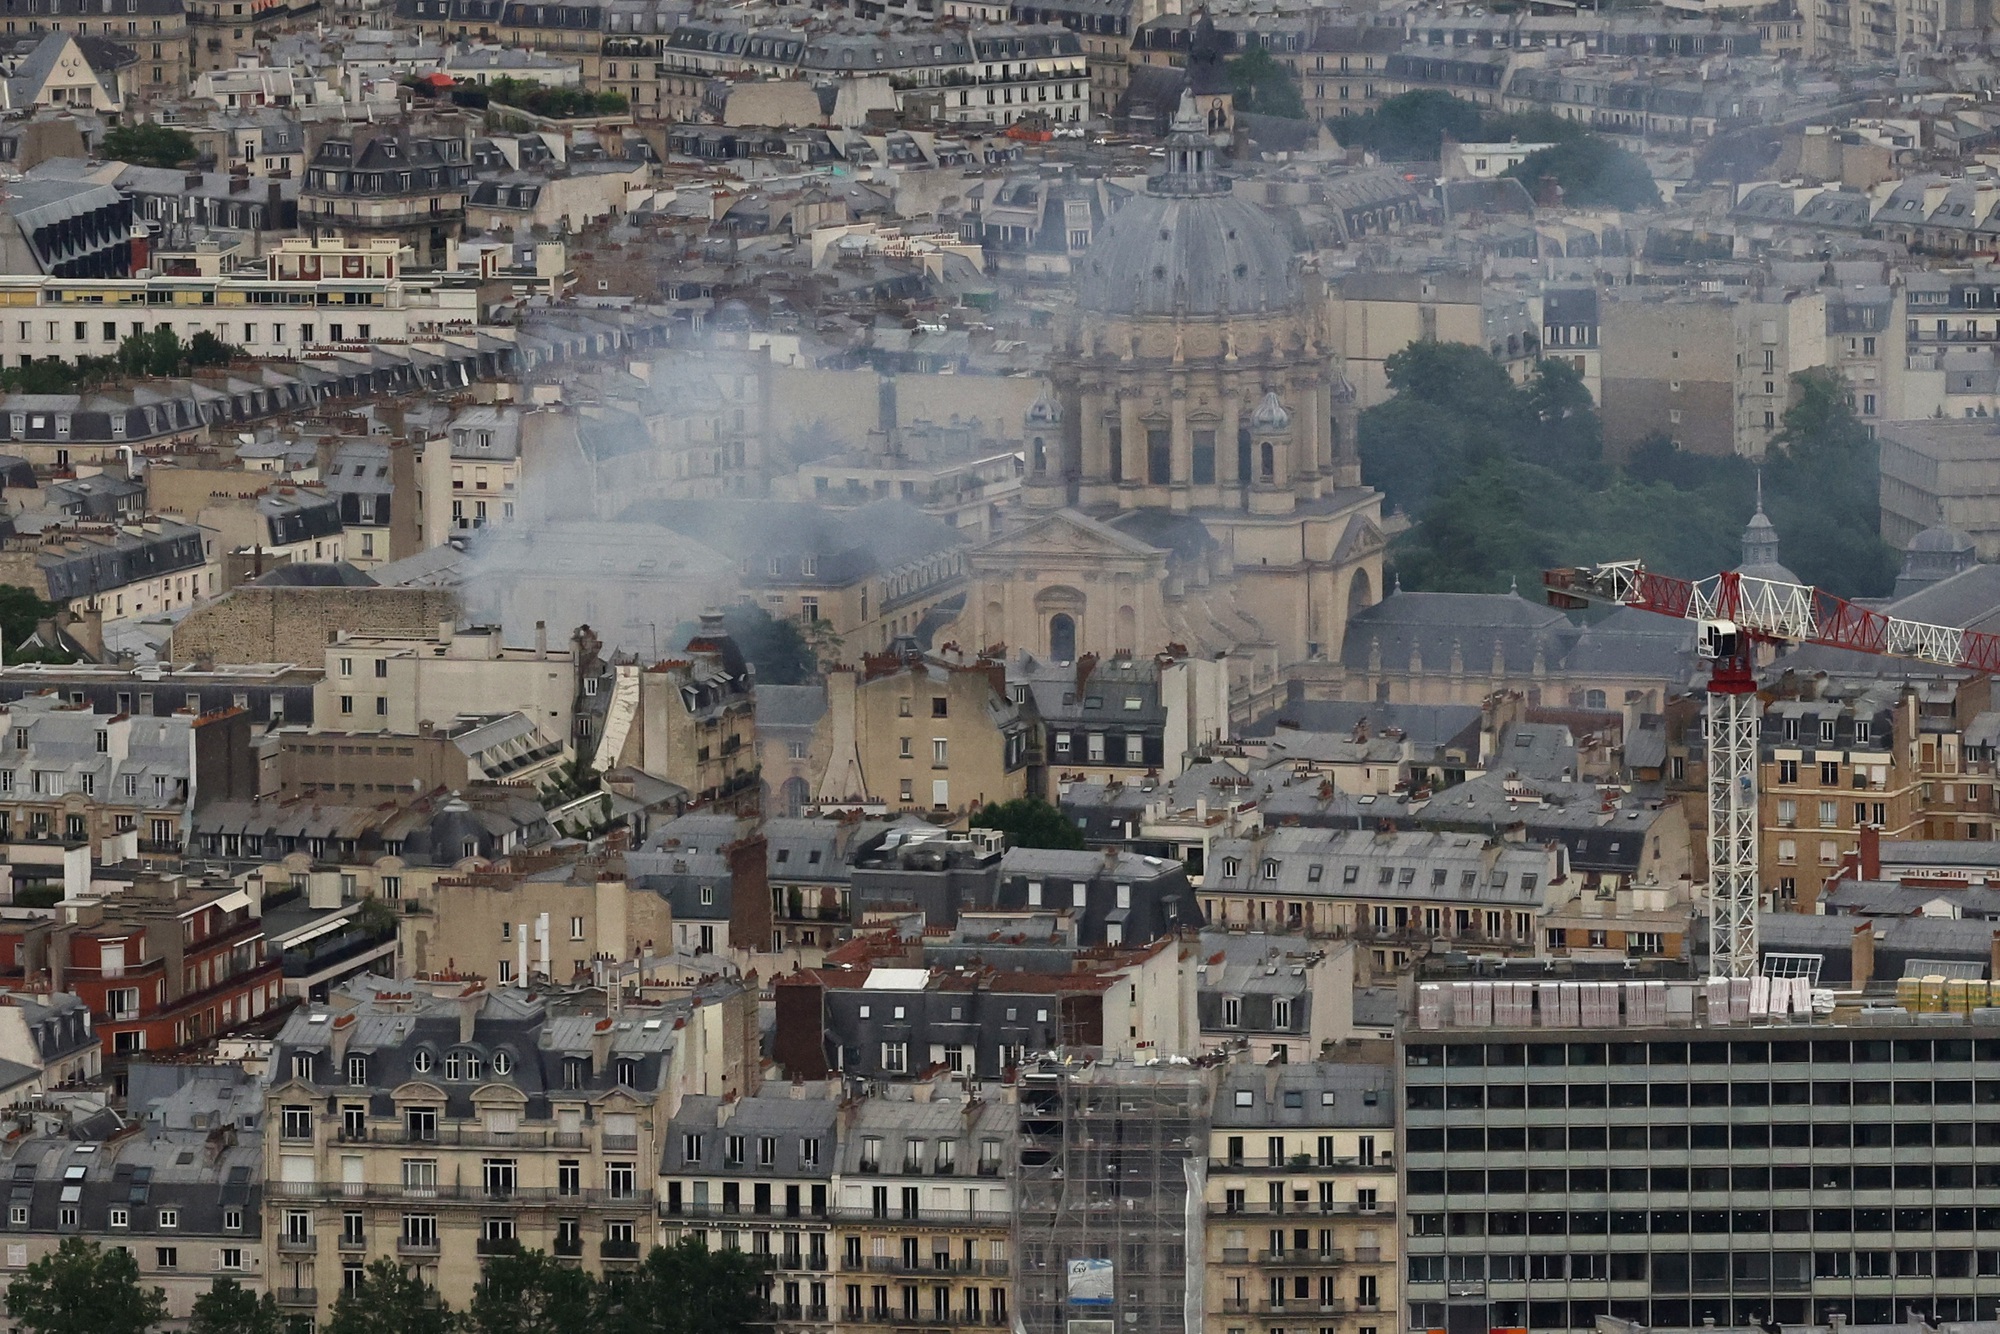 Nguyên nhân vụ nổ giữa trung tâm Paris, khiến 37 người bị thương là gì? - Ảnh 1.